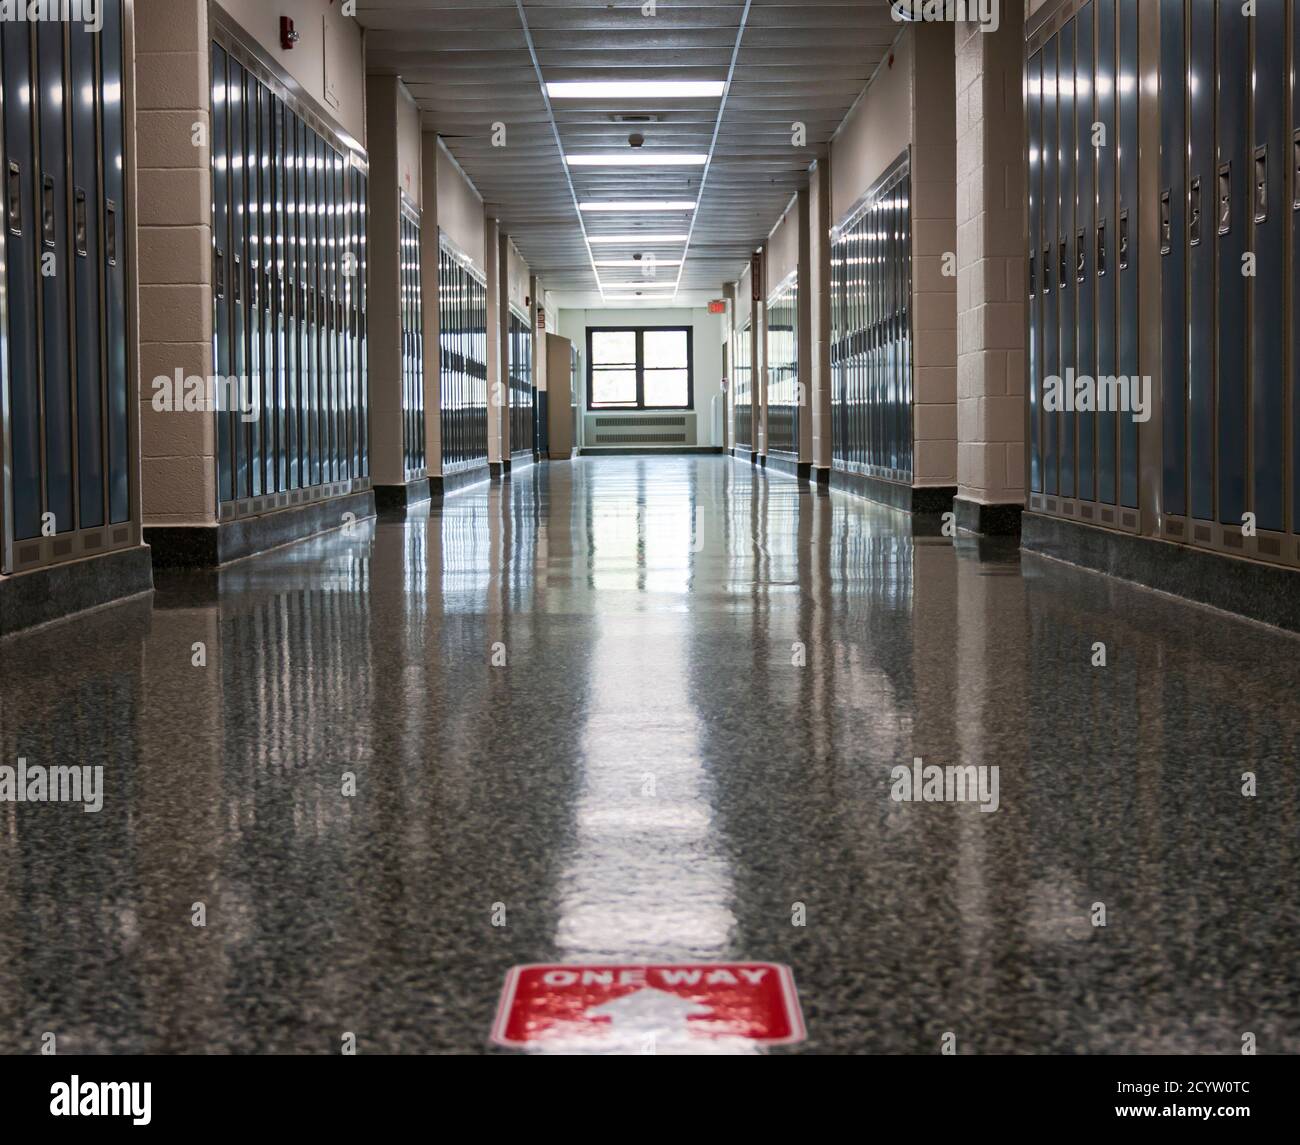 Un pasillo vacío de la escuela secundaria con una señal de sentido grabado en el piso como parte de la neew normal para abrir las escuelas en una pandemia. Foto de stock